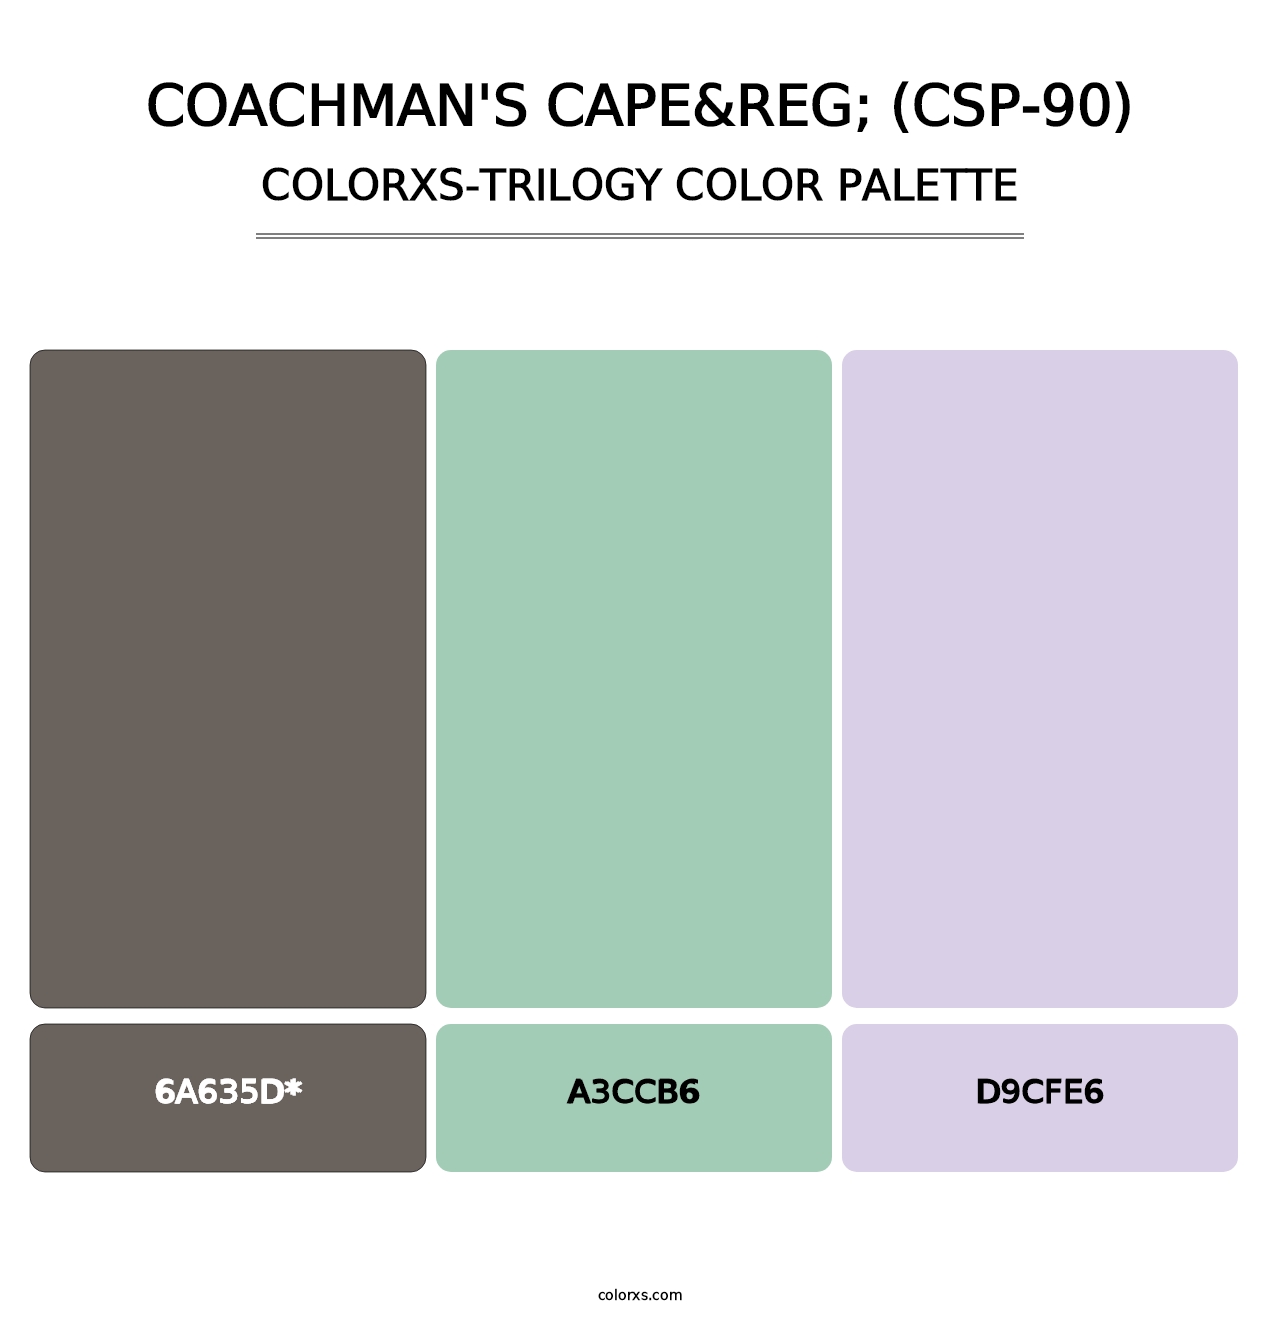 Coachman's Cape&reg; (CSP-90) - Colorxs Trilogy Palette